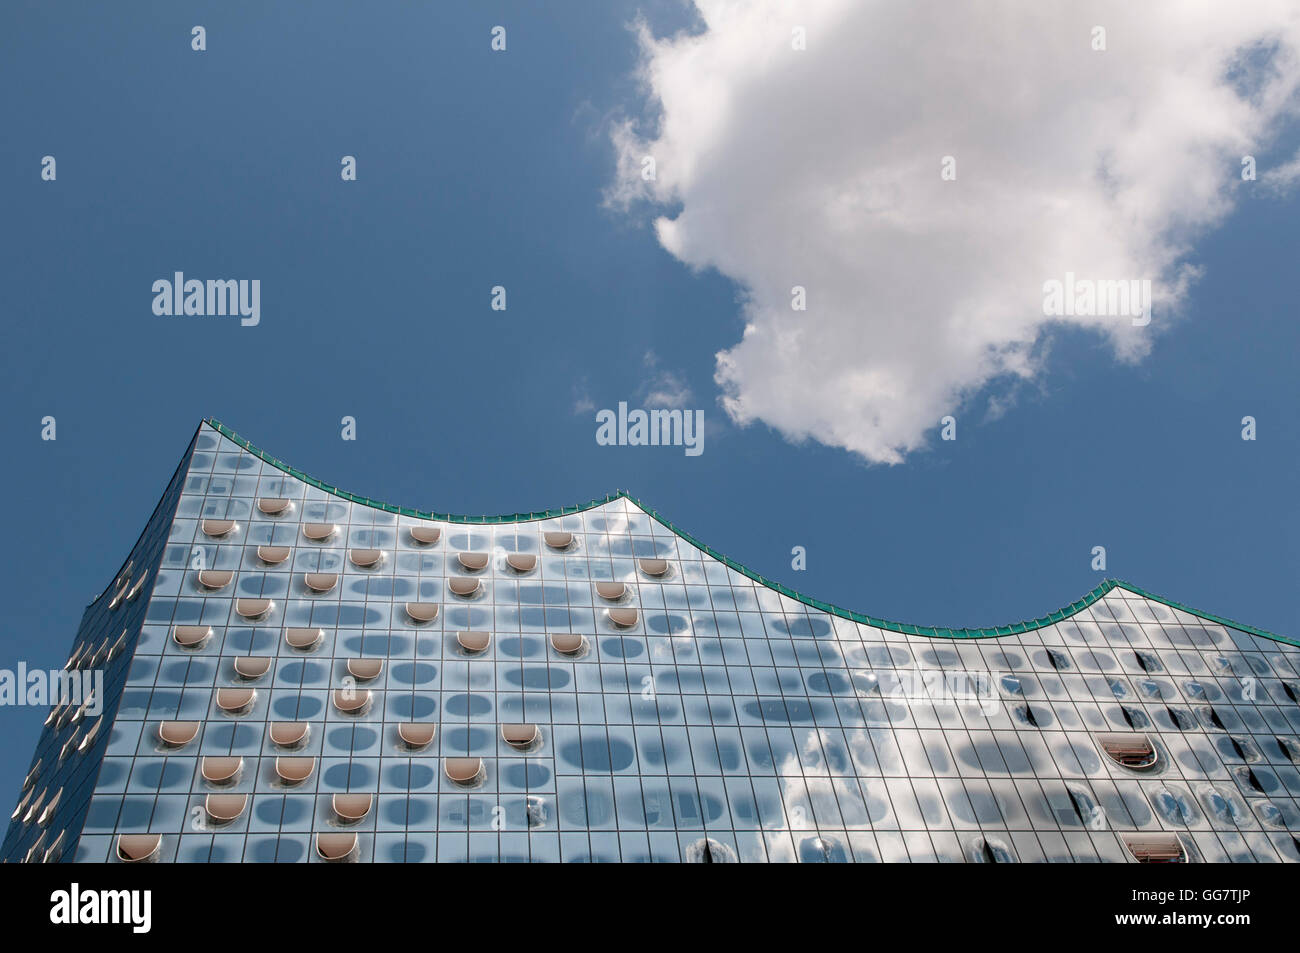 La Elbphilharmonie concert hall, Amburgo, Germania. Progettato dagli architetti Herzog & de Meuron. Particolare della facciata di vetro. Foto Stock